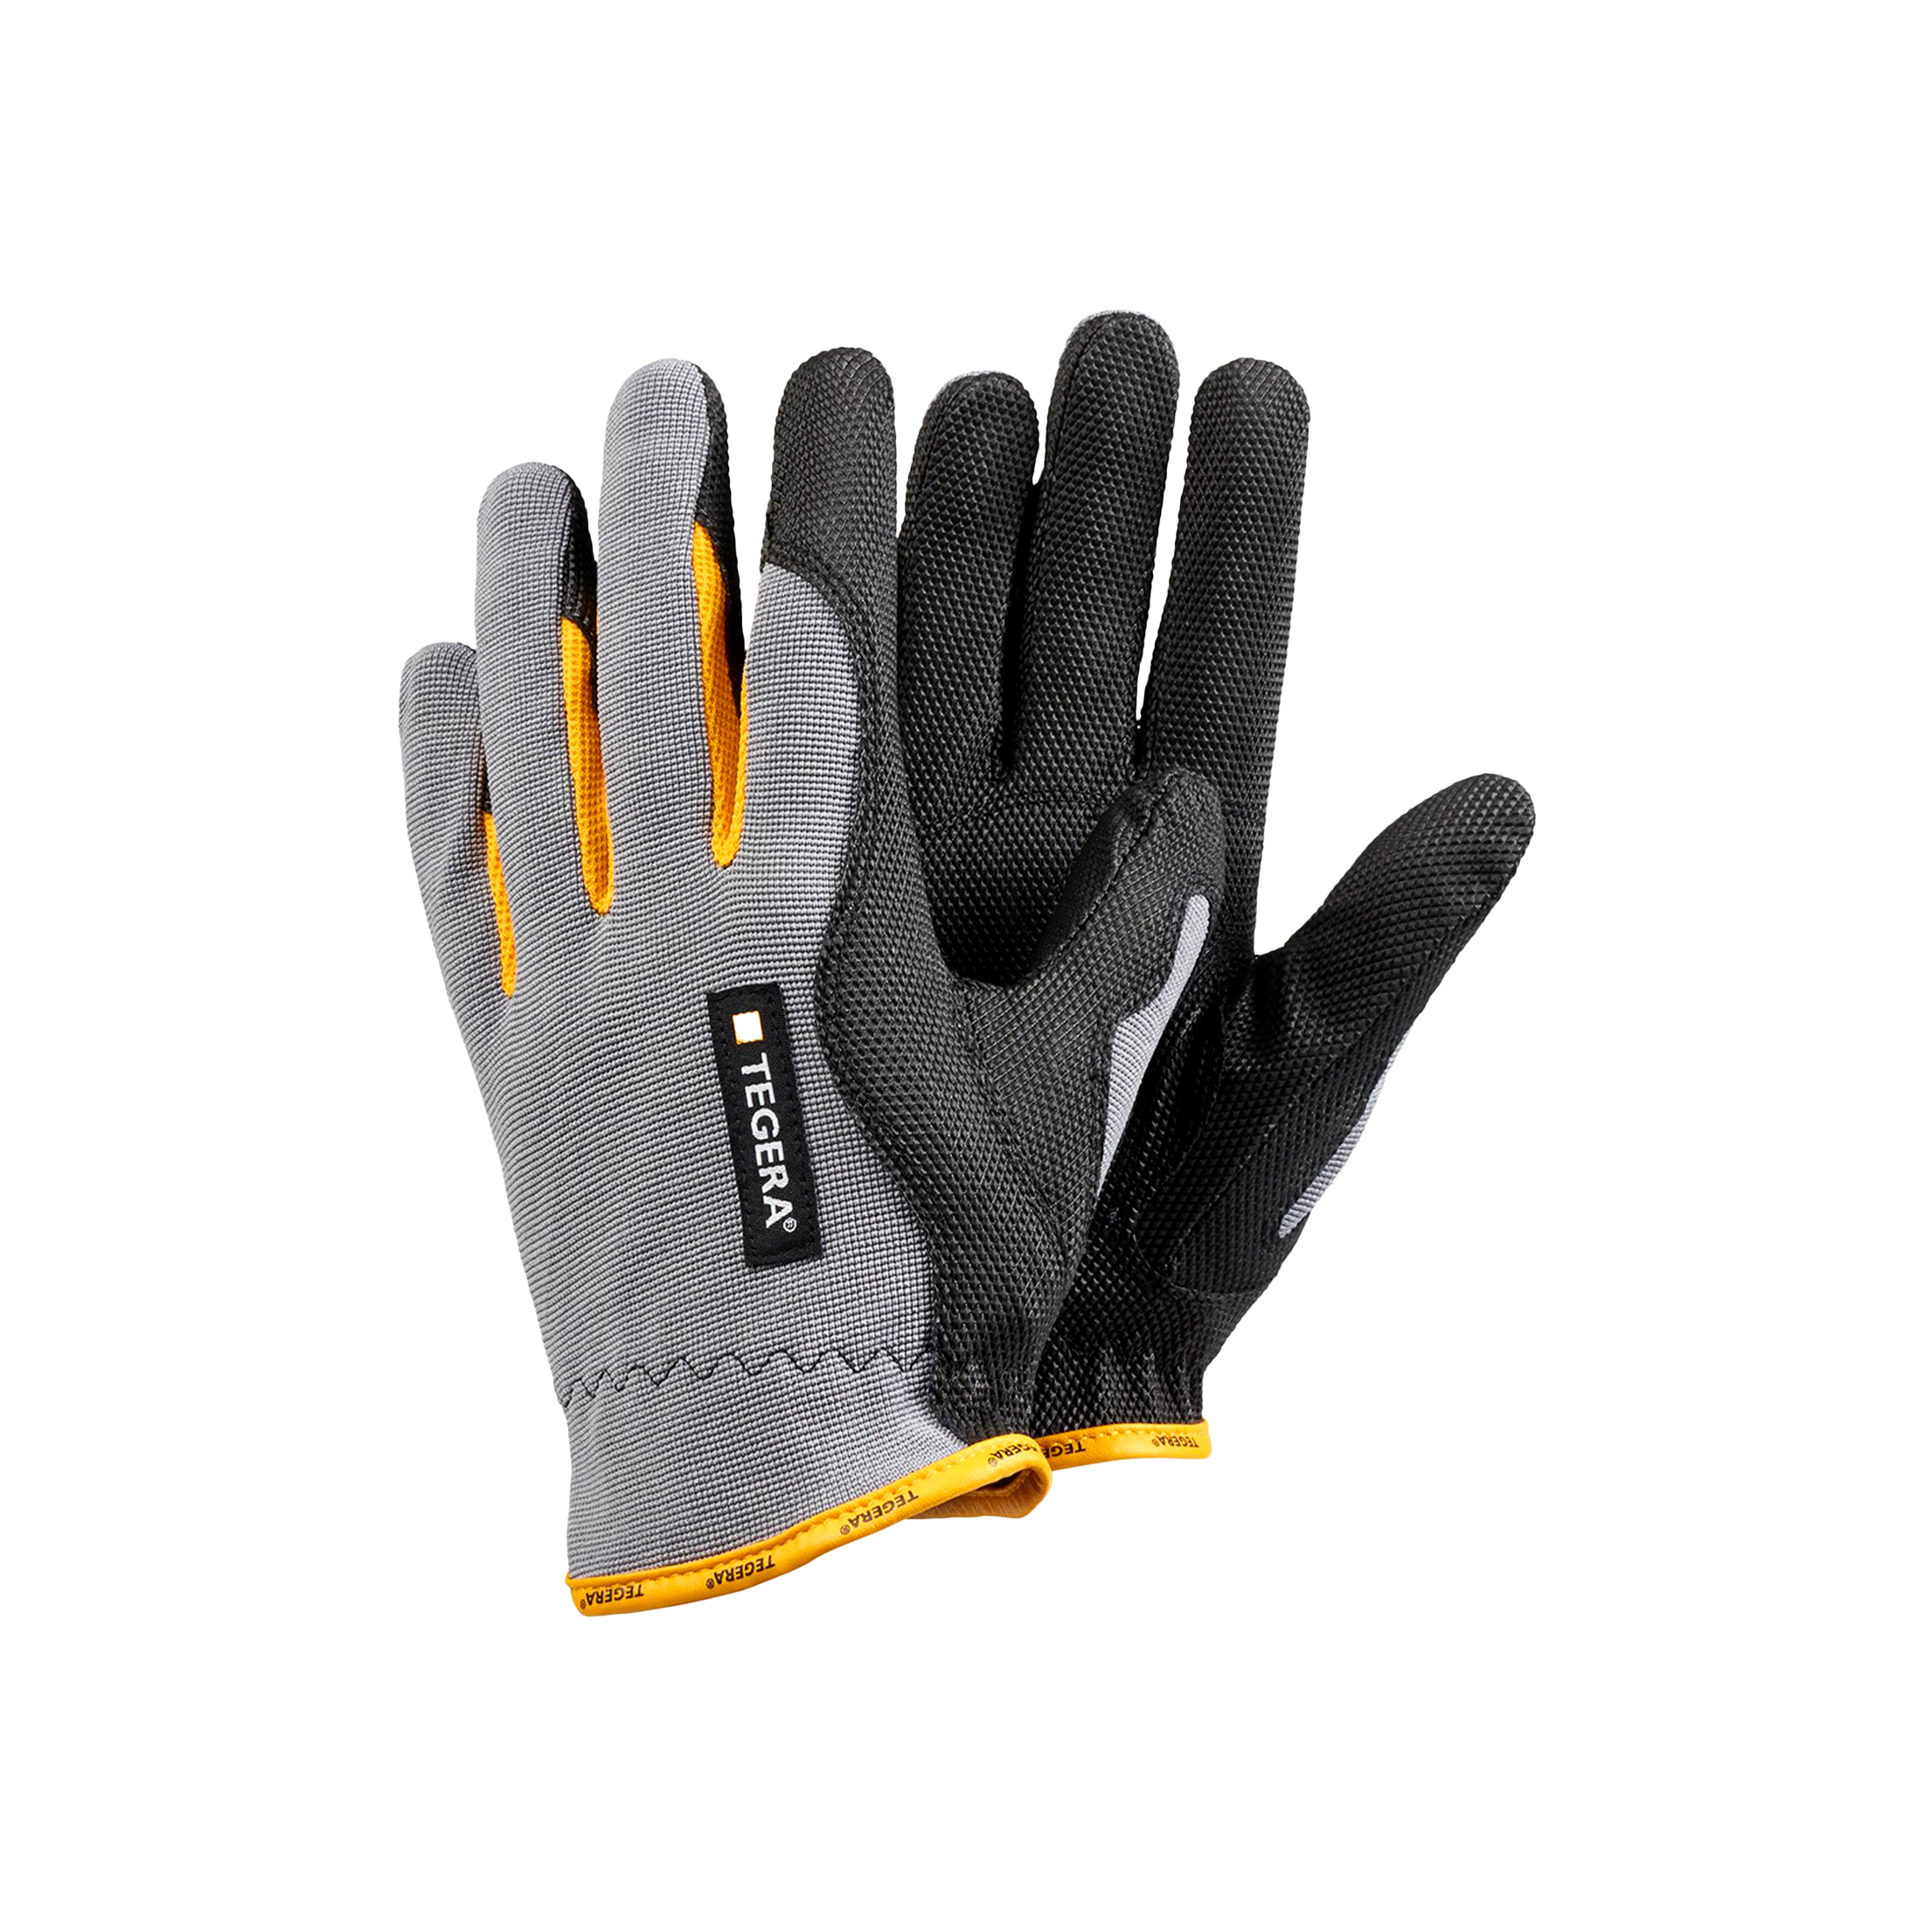 Pro 9124 | All-Round Work Gloves